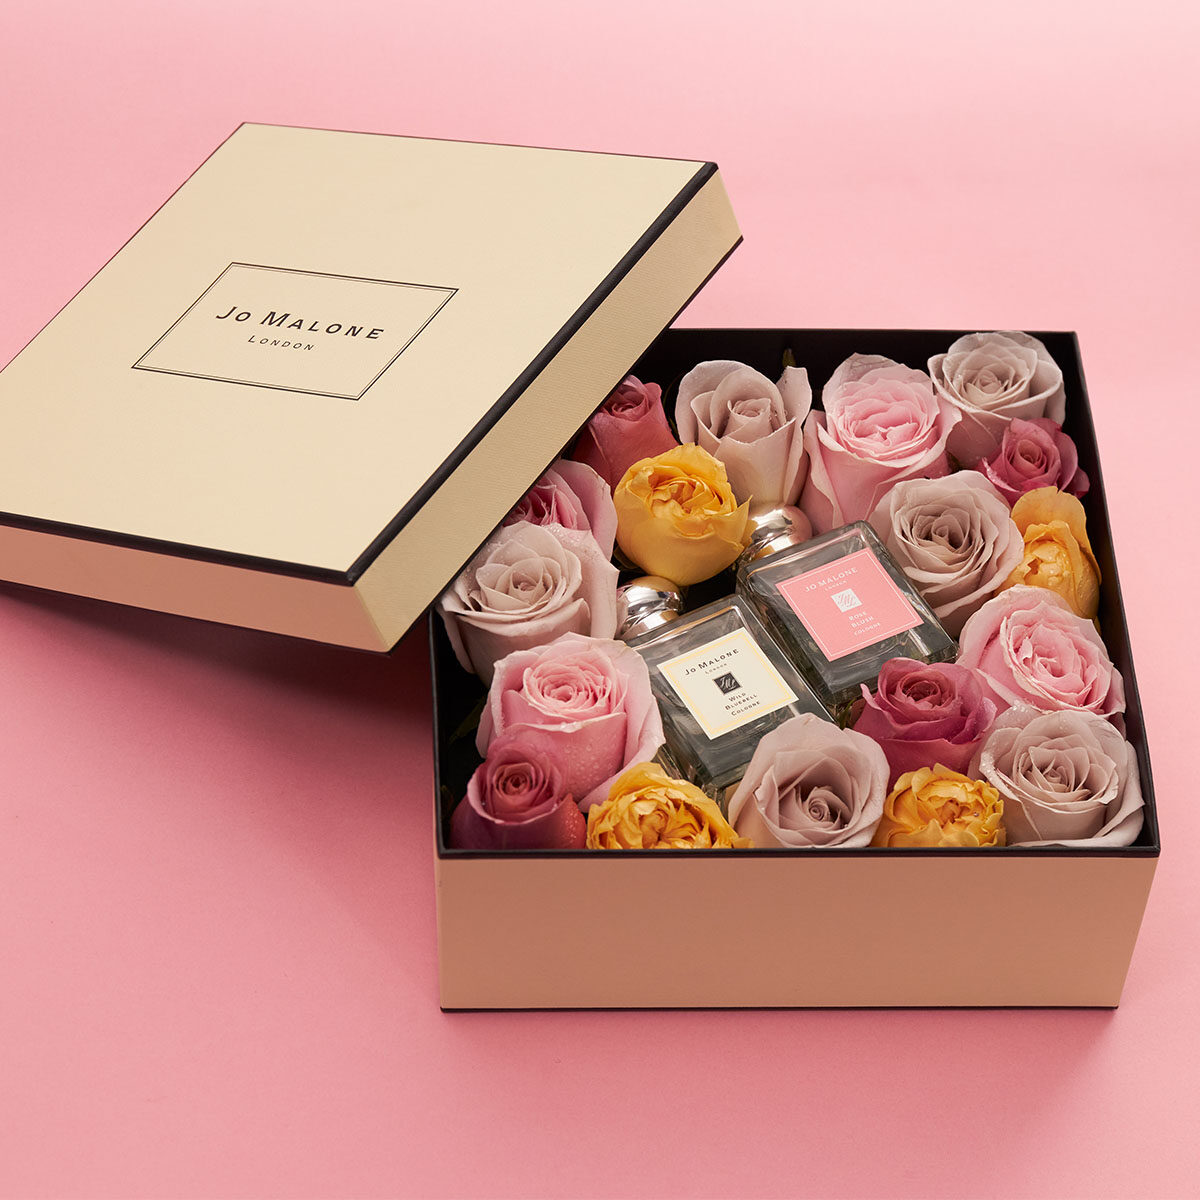 給她/他的情人節禮物提案！8款香氛及玫瑰鮮花禮盒紀念浪漫愛情：女朋